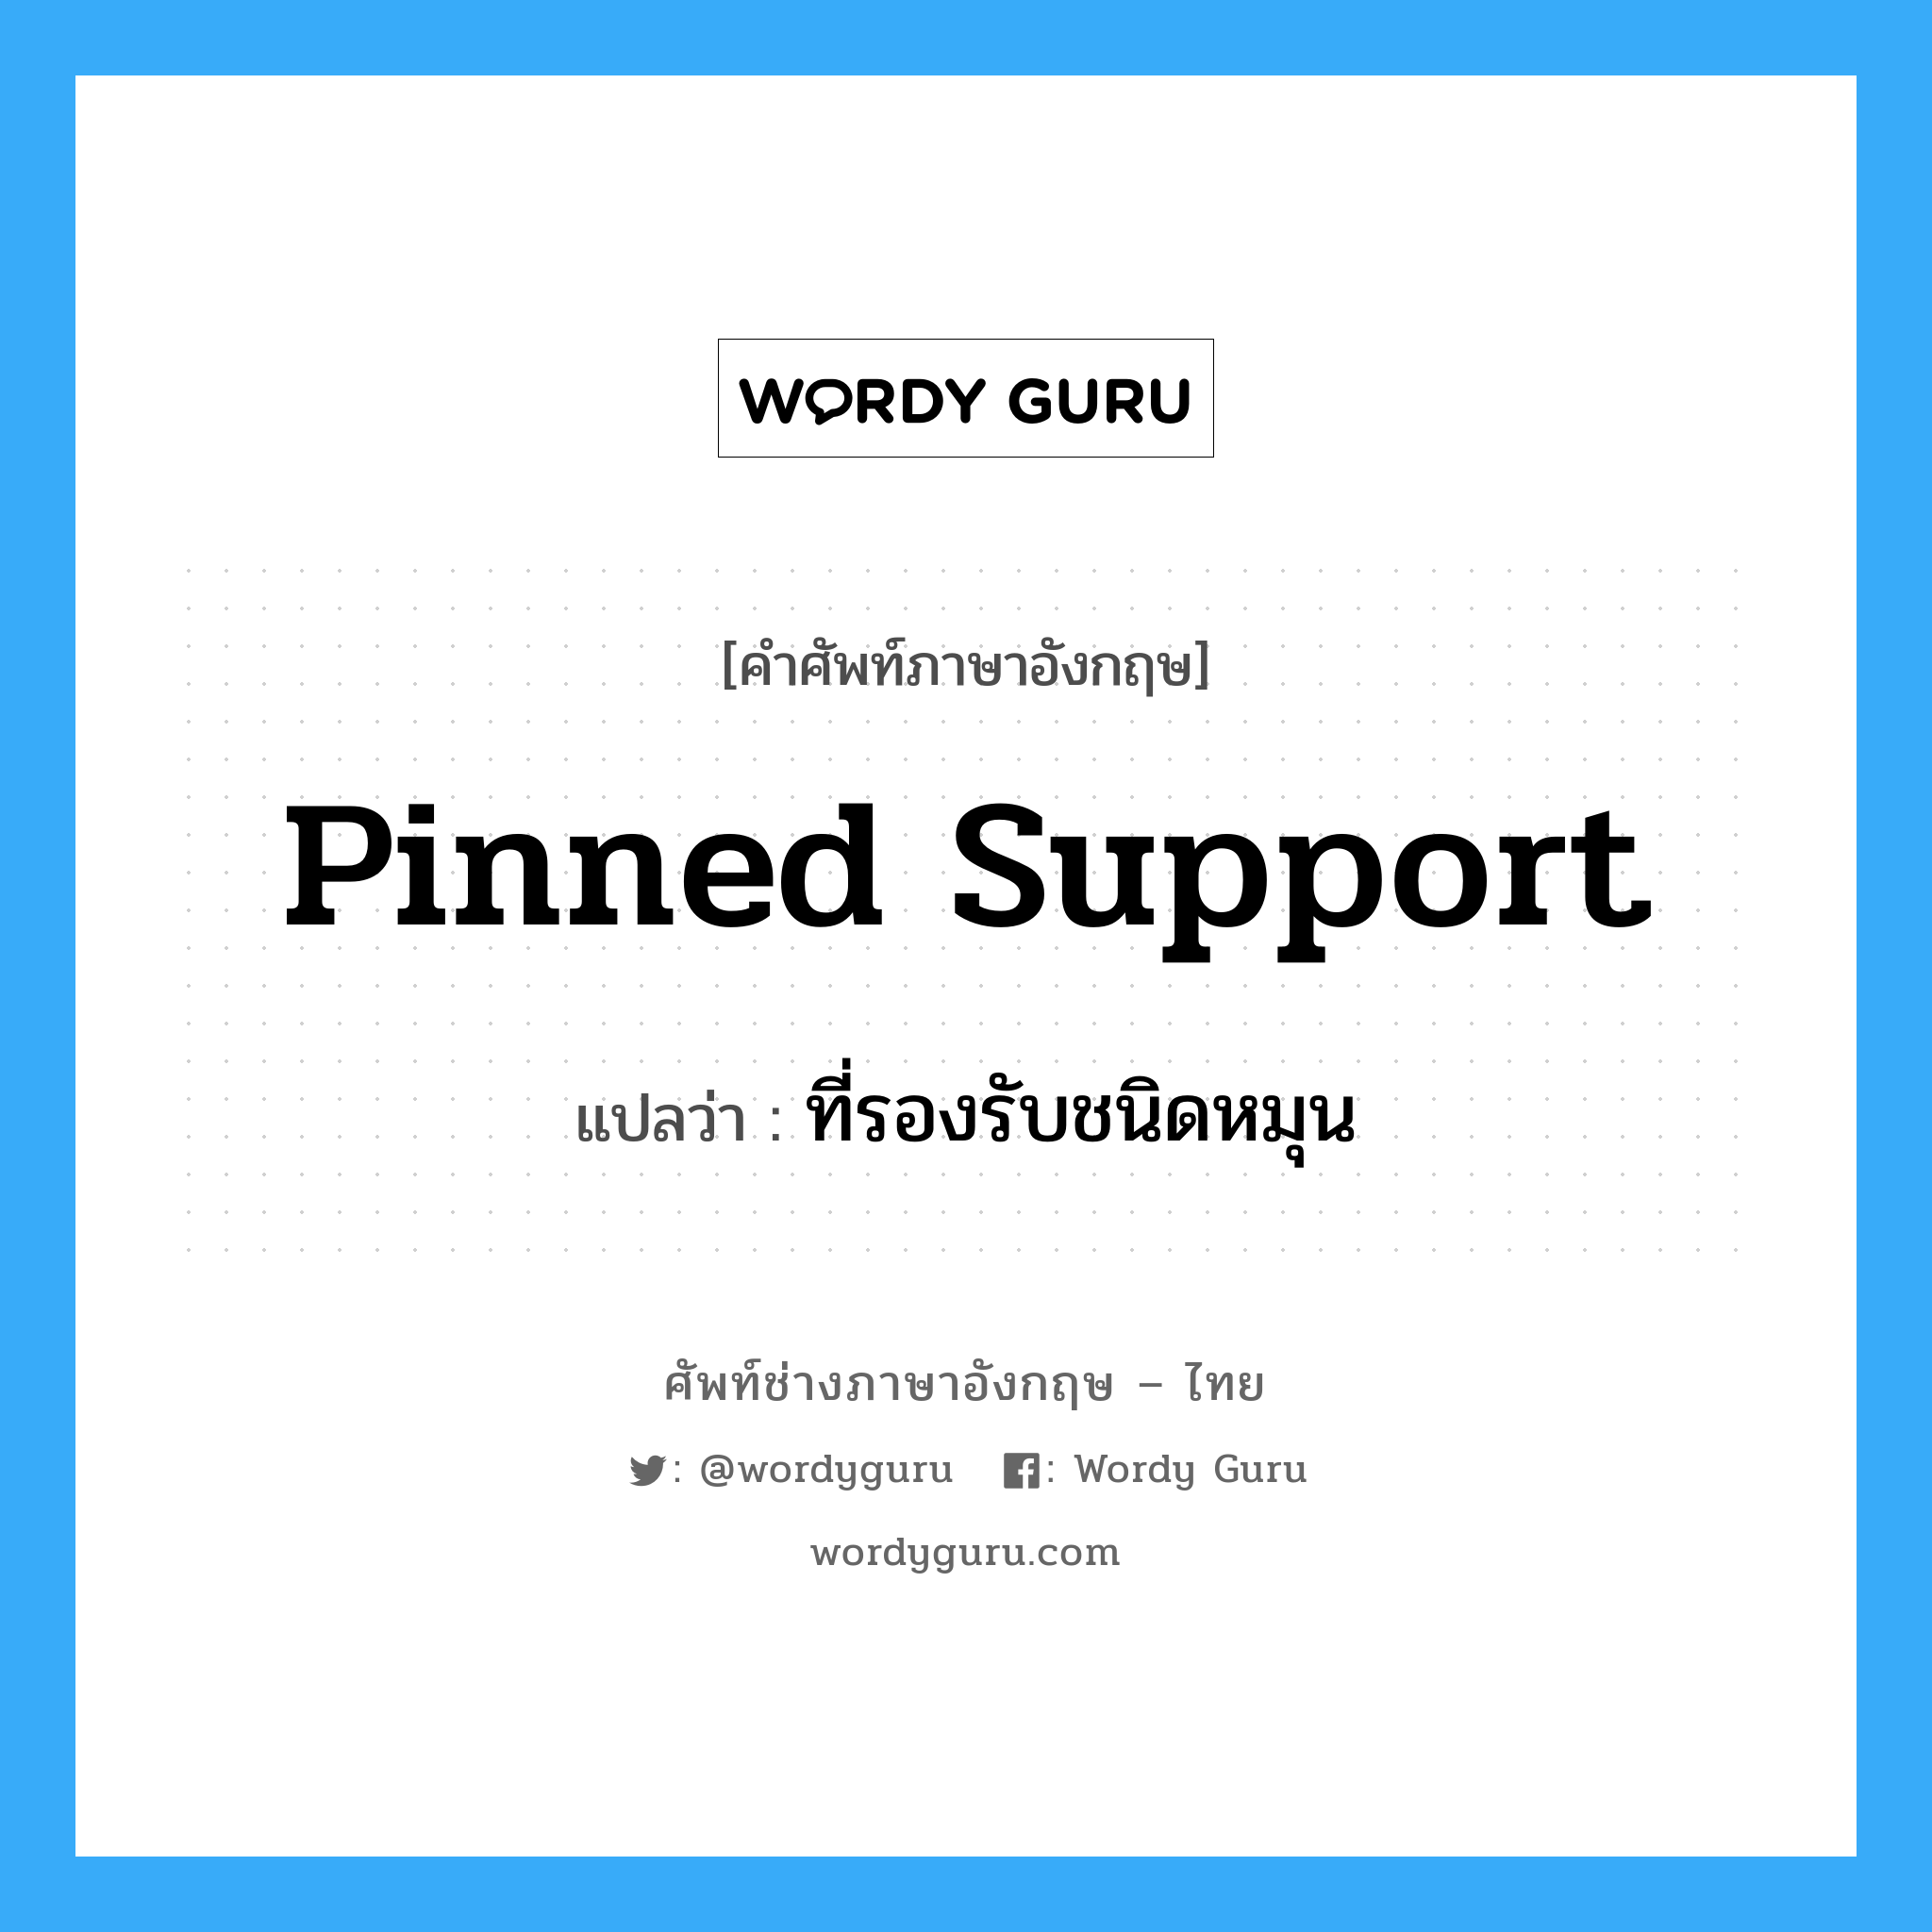 pinned support แปลว่า?, คำศัพท์ช่างภาษาอังกฤษ - ไทย pinned support คำศัพท์ภาษาอังกฤษ pinned support แปลว่า ที่รองรับชนิดหมุน